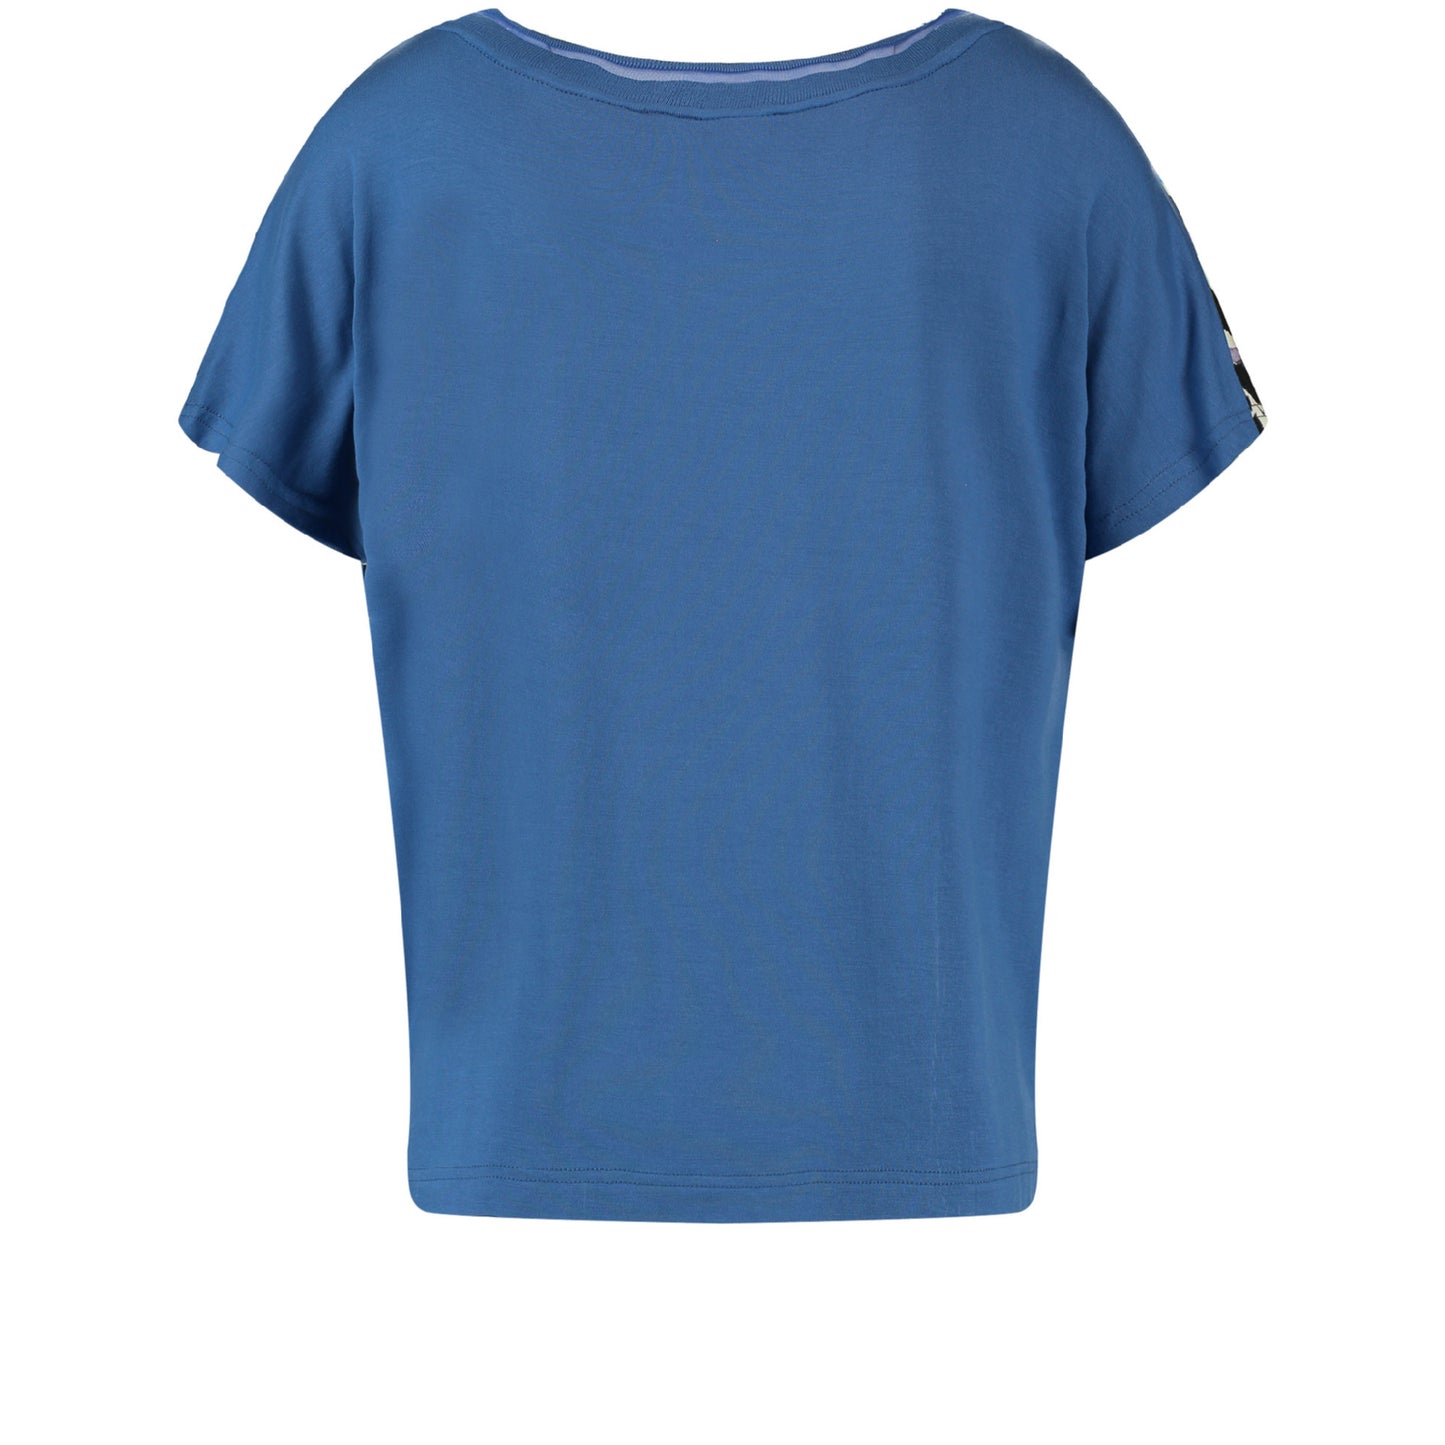 Gerry Weber 170255 35027 9089 Ecru/White/Blue Print T-Shirt